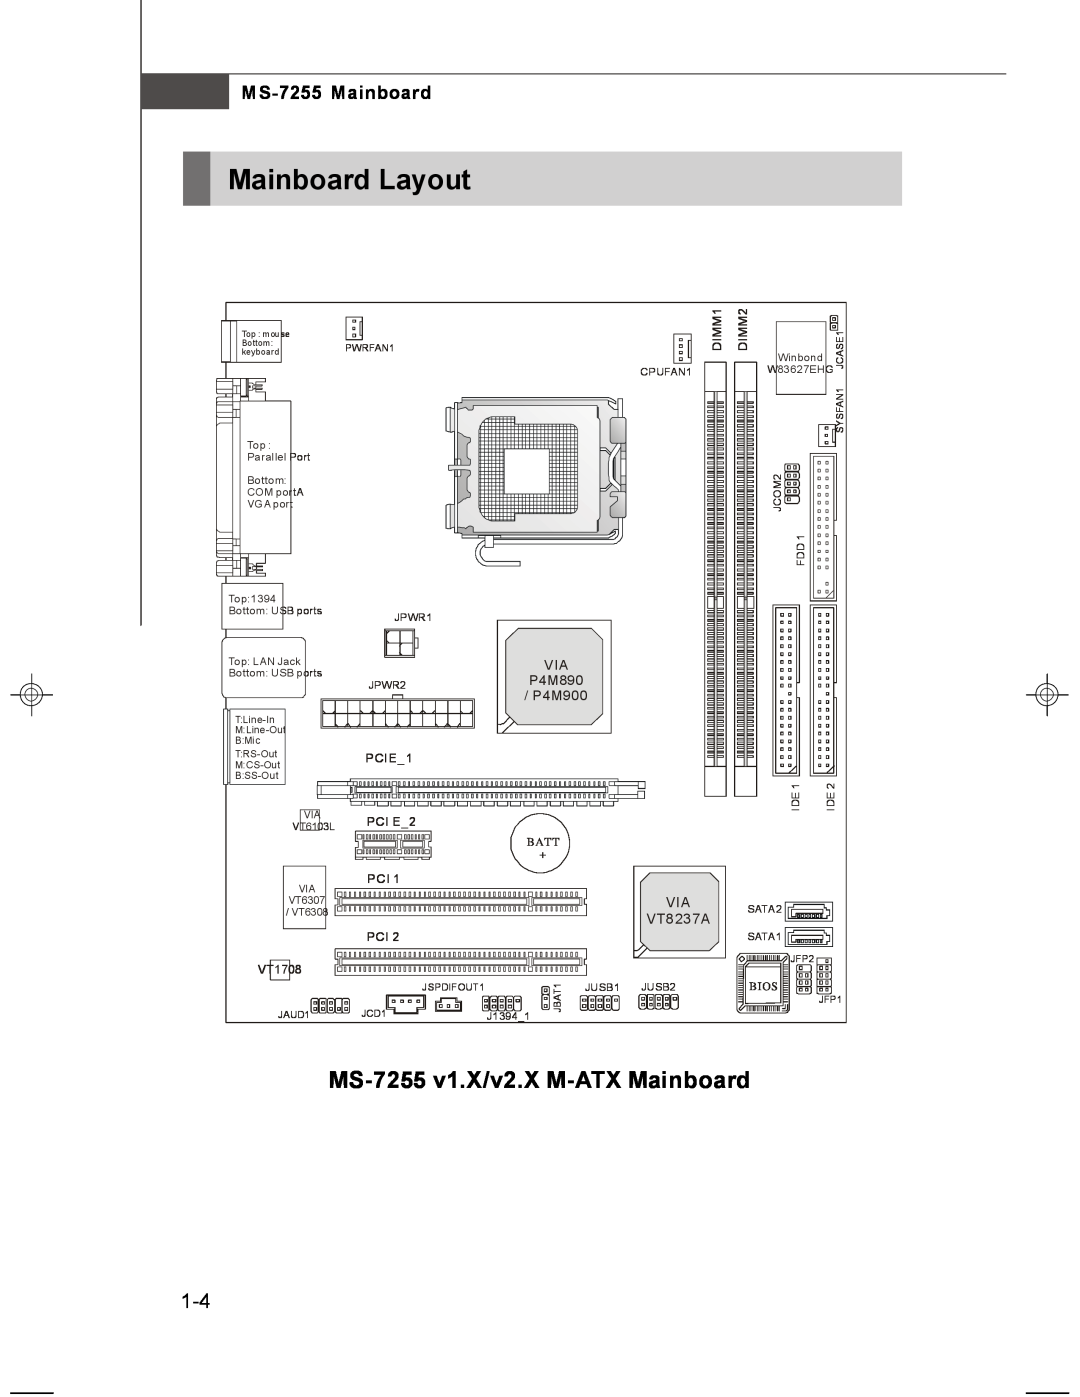 MSI Mainboard Layout, MS-7255 v1.X/v2.X M-ATX Mainboard, MS-7255 Mainboard, VT8237A, P4M890, P4M900, DIMM1, PCIE1, Batt 